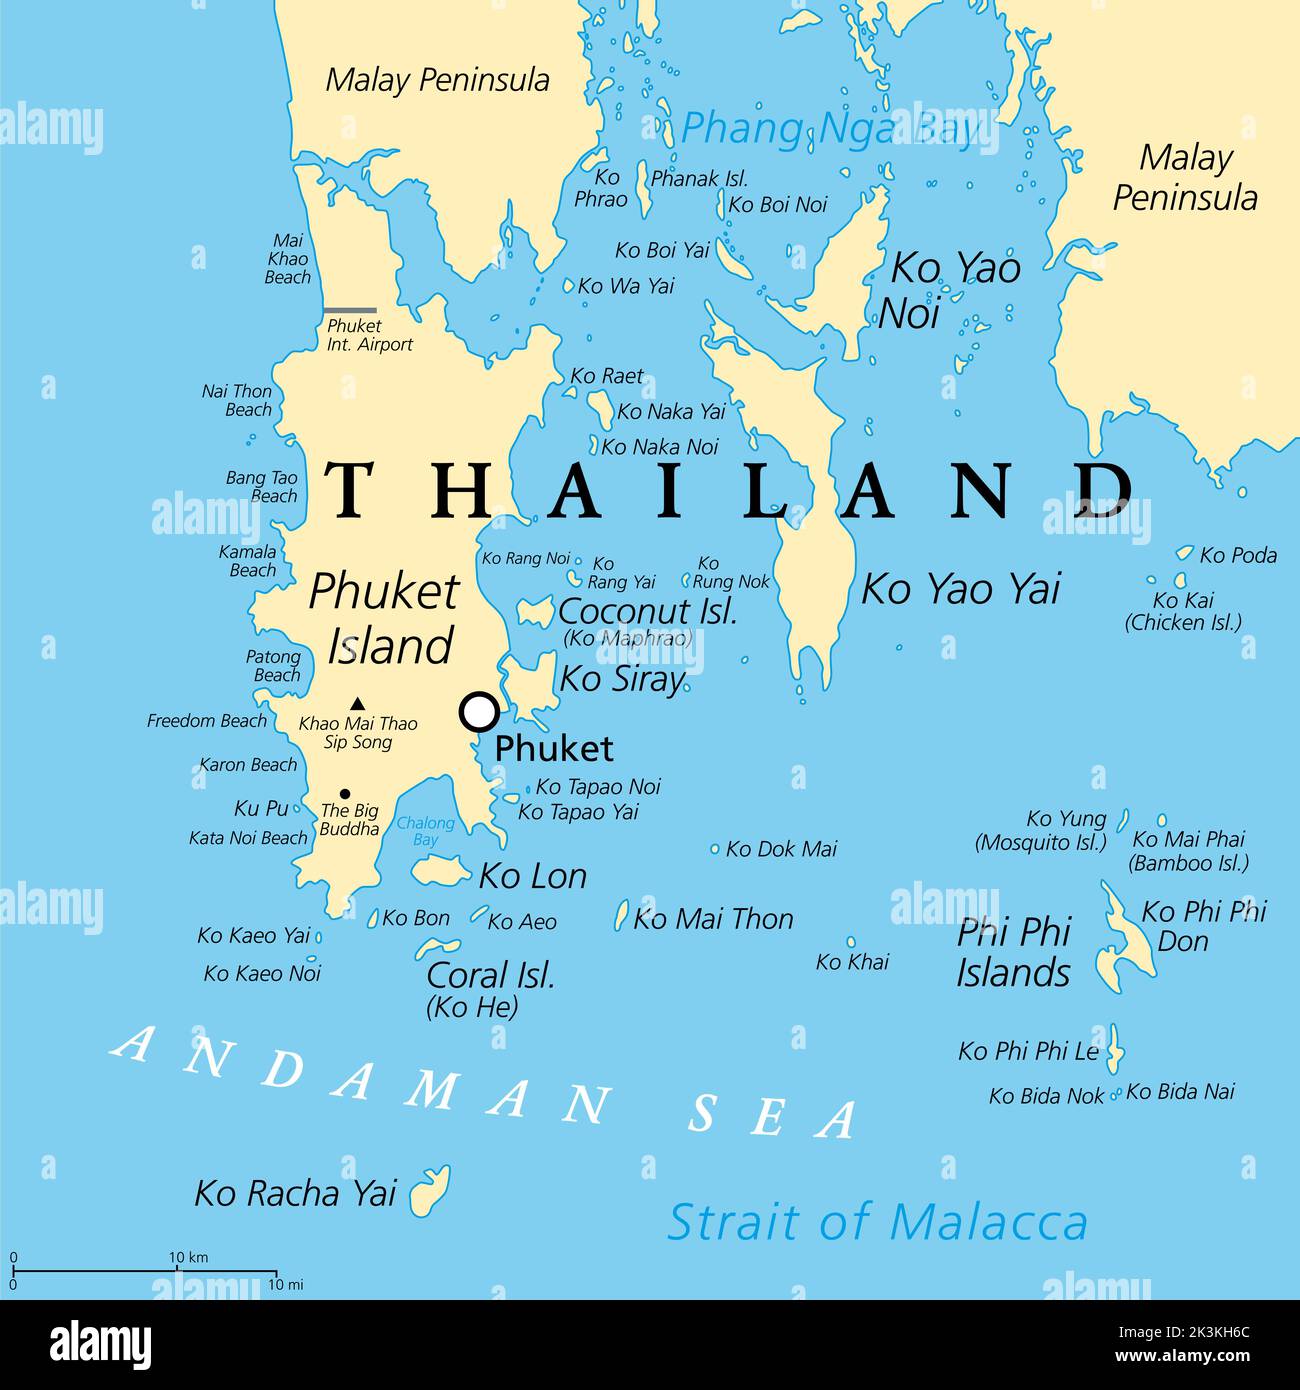 Phuket, la più grande isola della Thailandia, mappa politica con l'area circostante. Popolare regione turistica con molte isole, a sud della penisola malese. Foto Stock